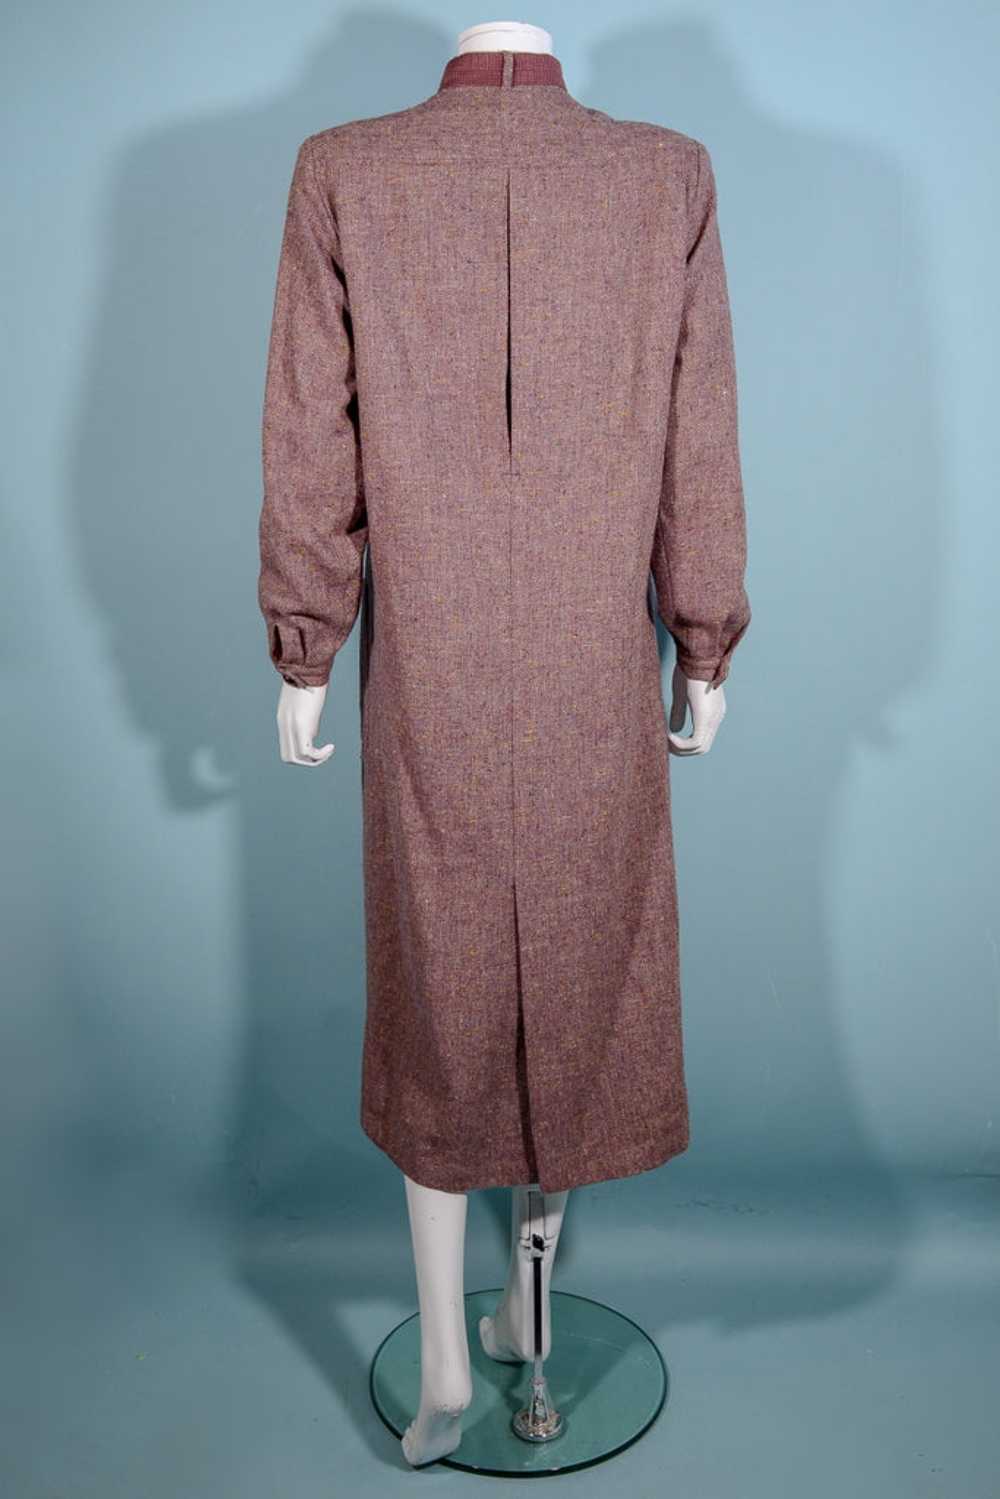 Vintage 70s Tweed Overcoat + Tie Neckline, Dark A… - image 11